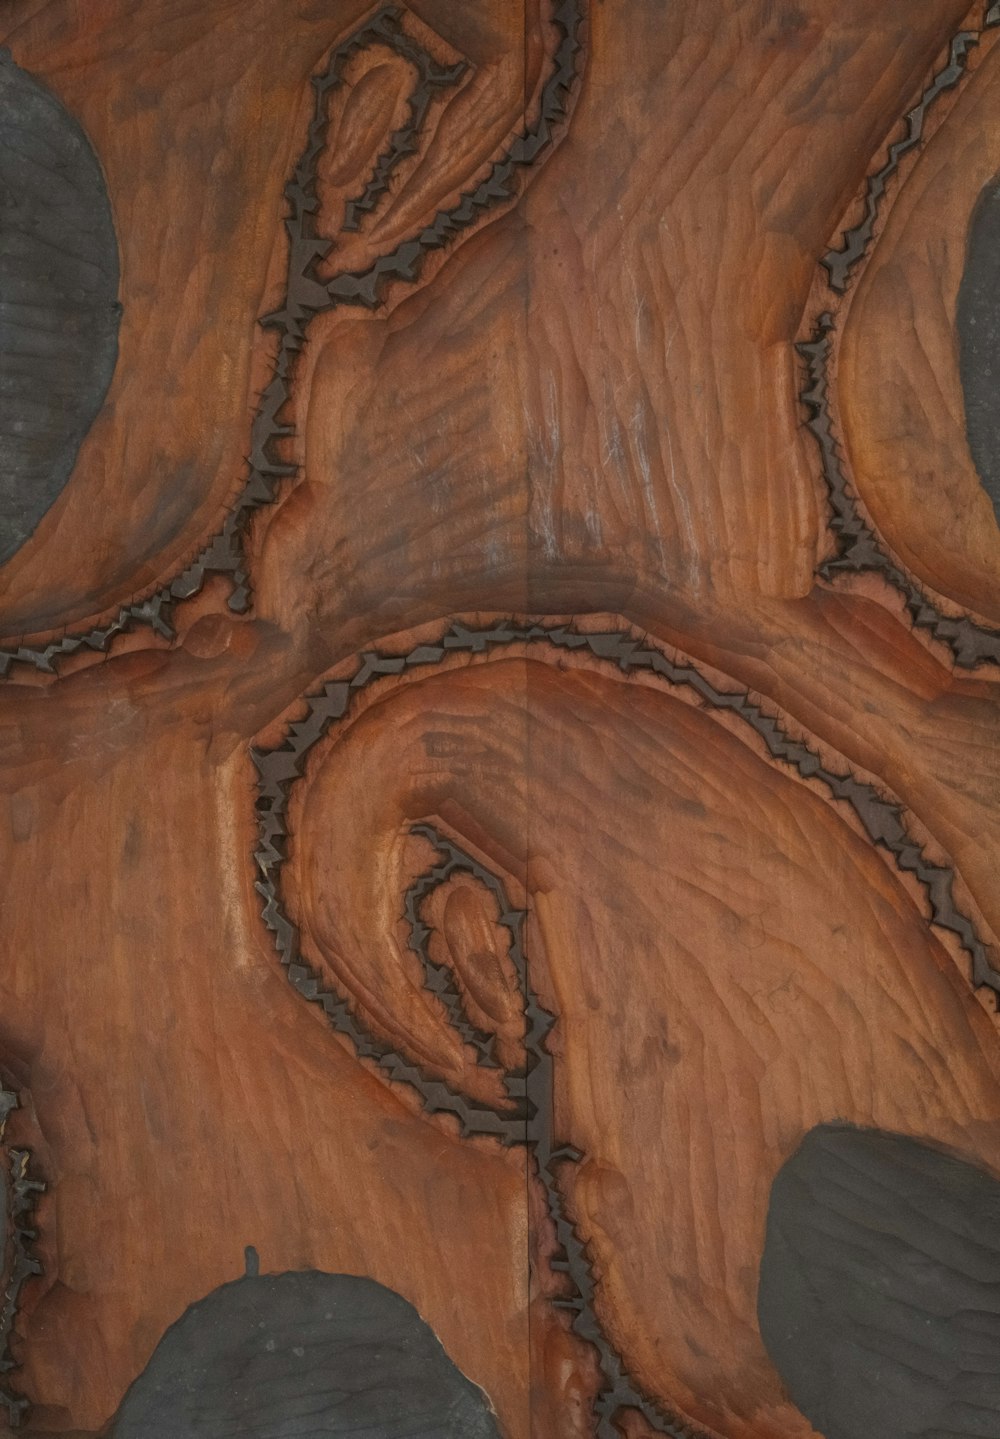 Una vista ravvicinata di una superficie in legno